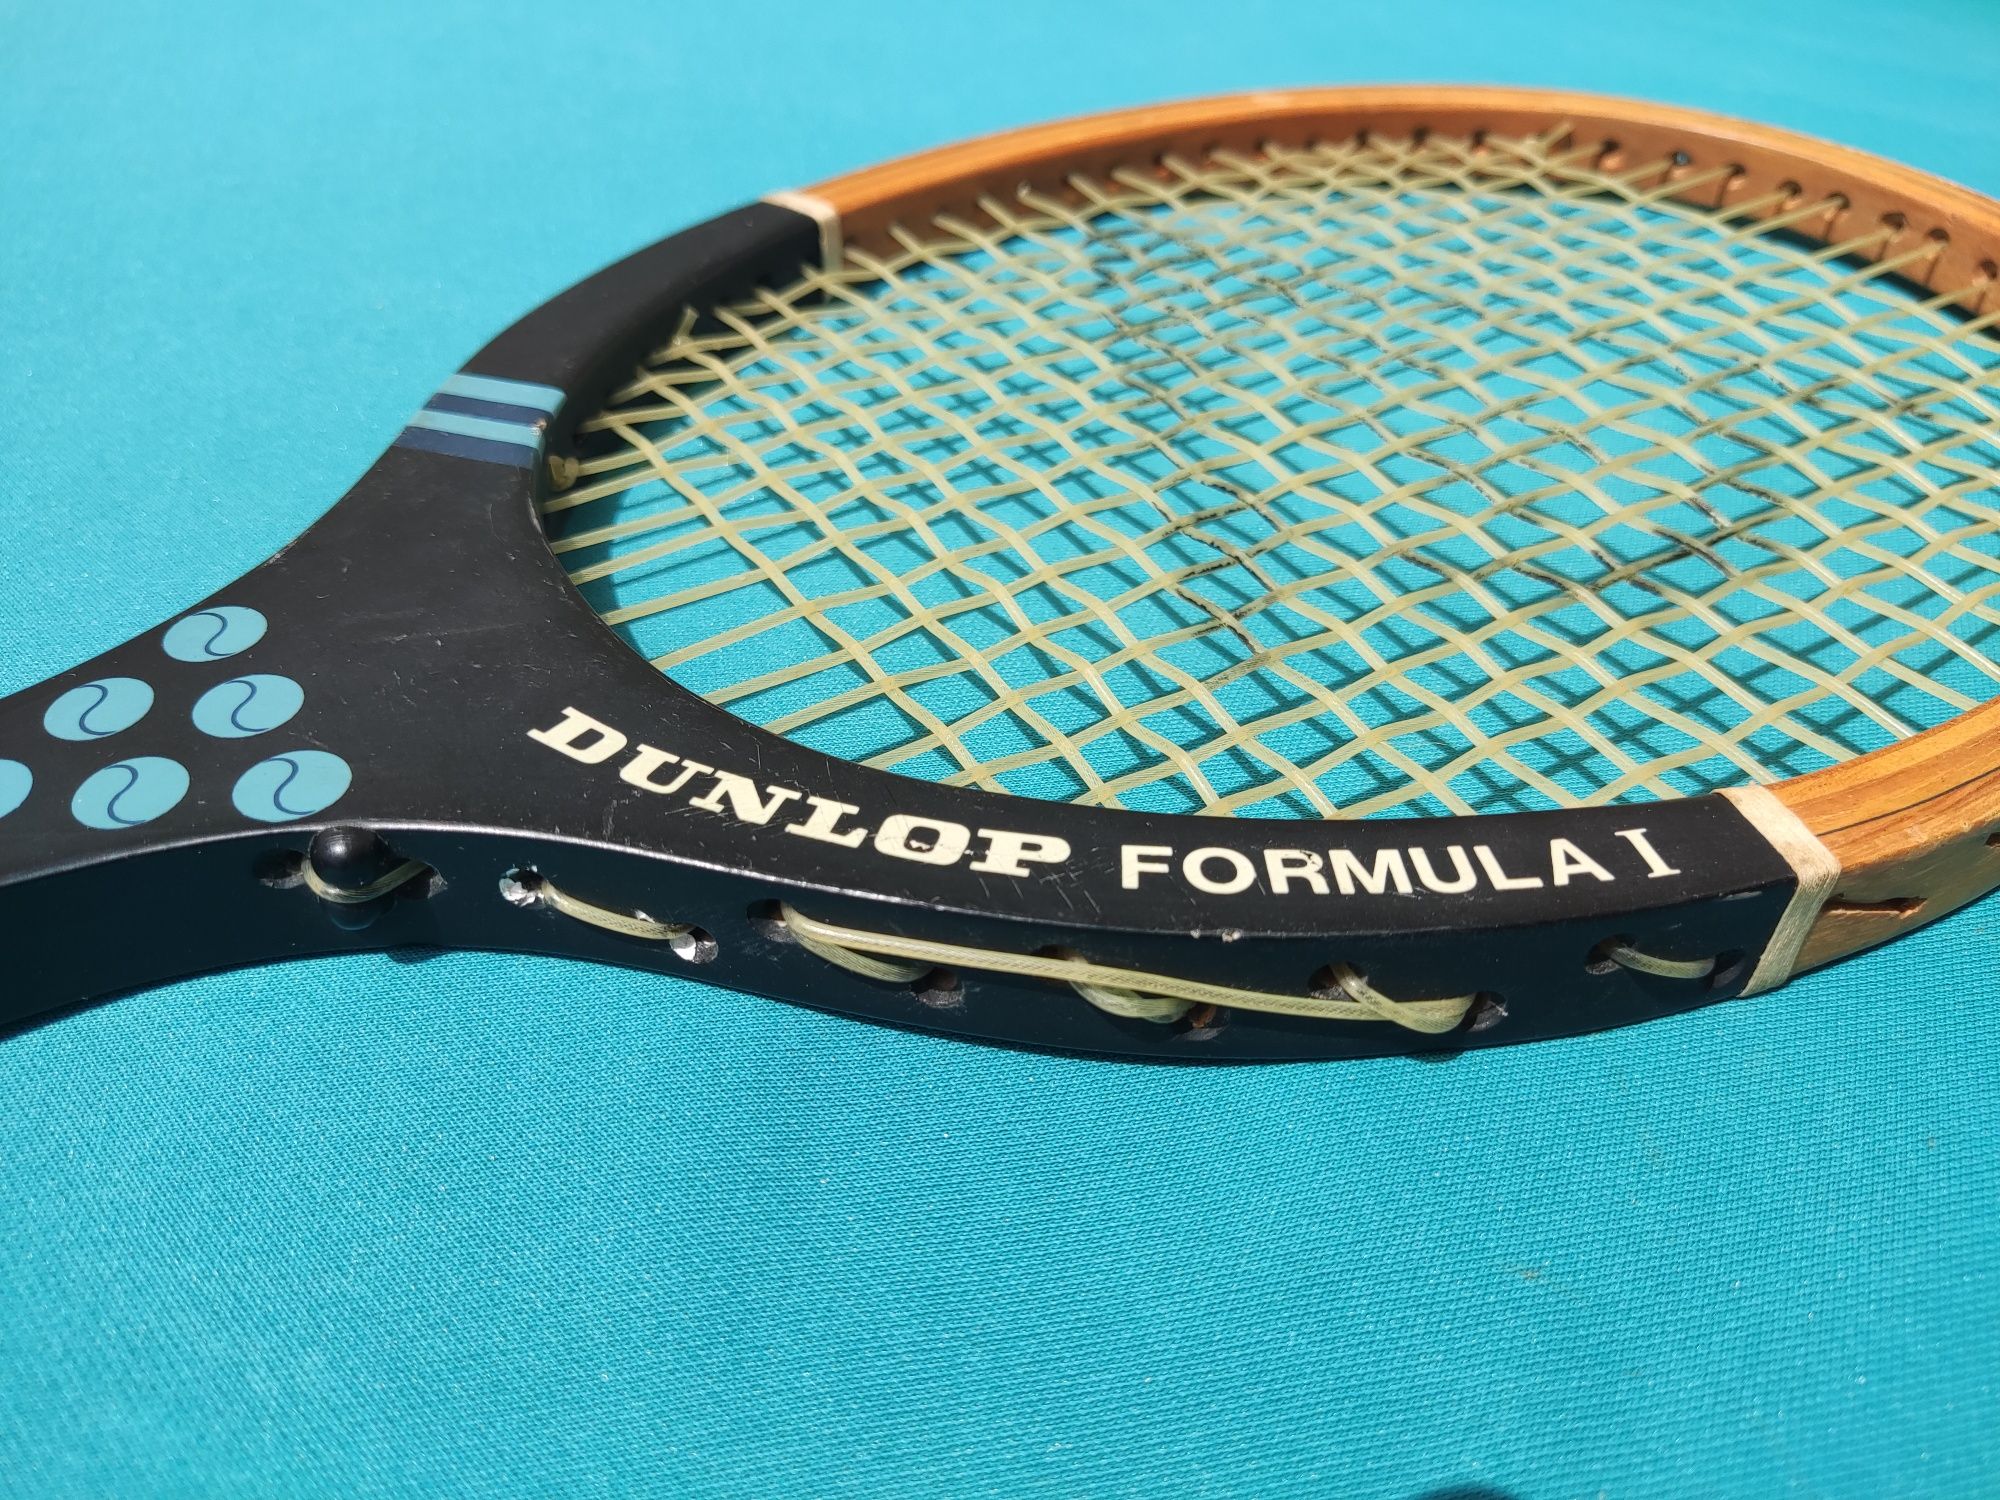 Raquete de ténis antiga "Dunlop Formula 1" vintage